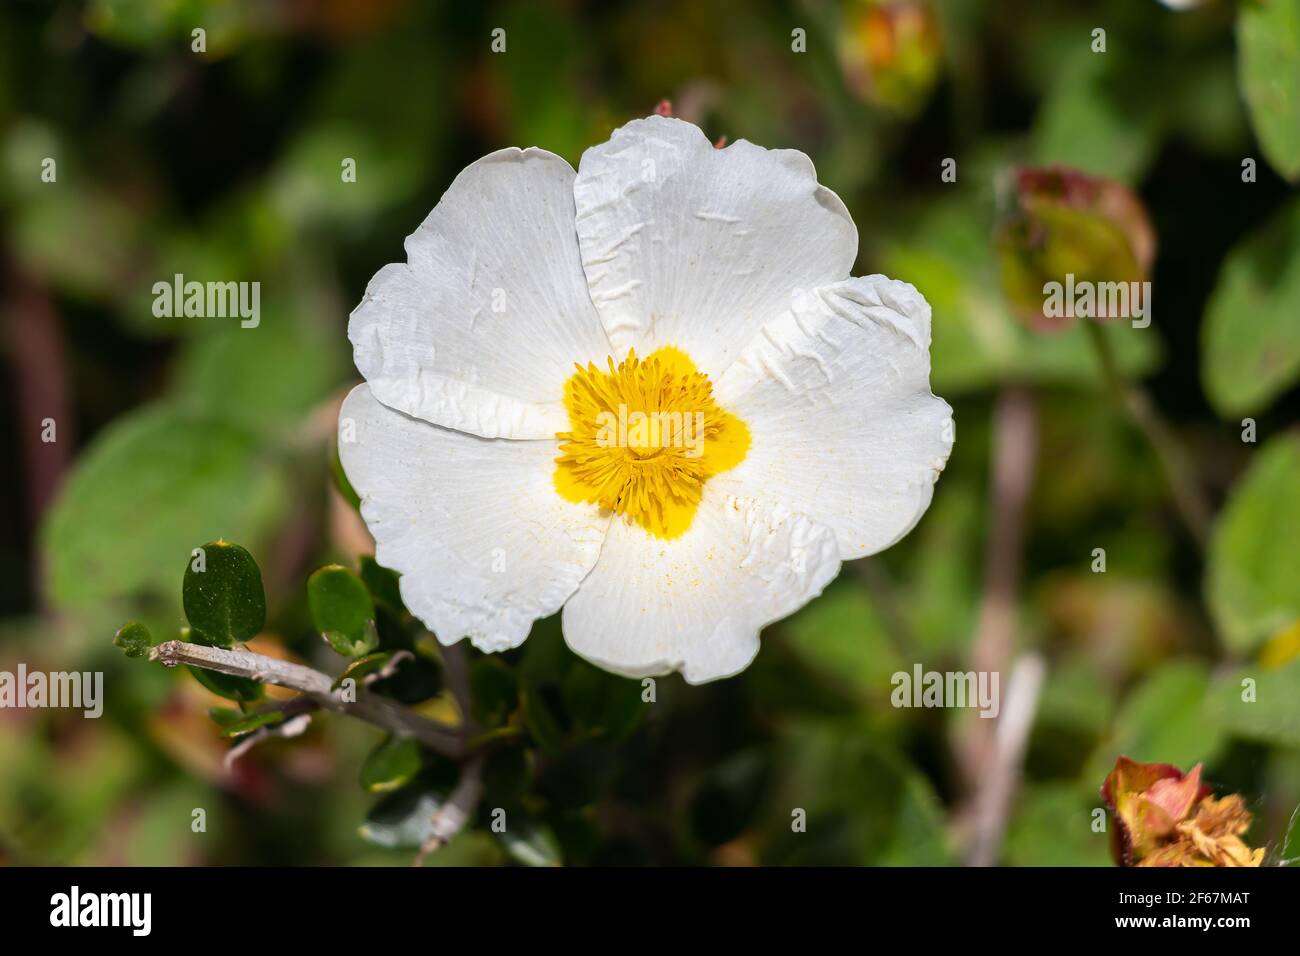 Cistus salviifolius, gebräuchliche Namen Salbei-leaved Rock-Rose, Salvia cistus oder Gallipoli Rose, ist ein Strauch der Familie Cistaceae. Stockfoto